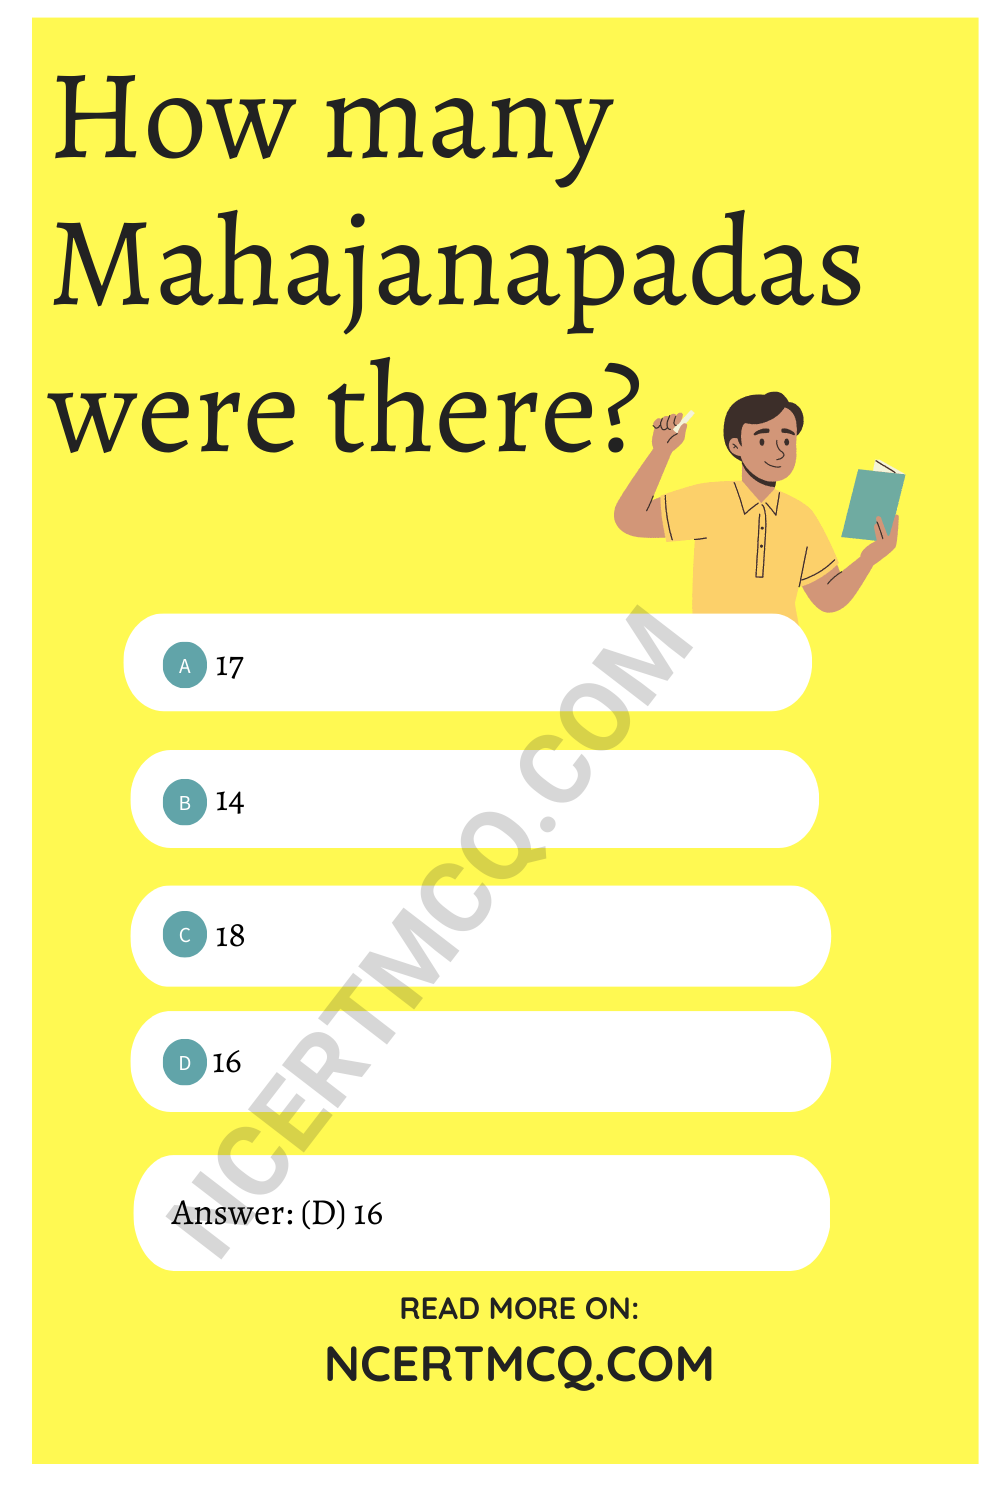 How many Mahajanapadas were there?